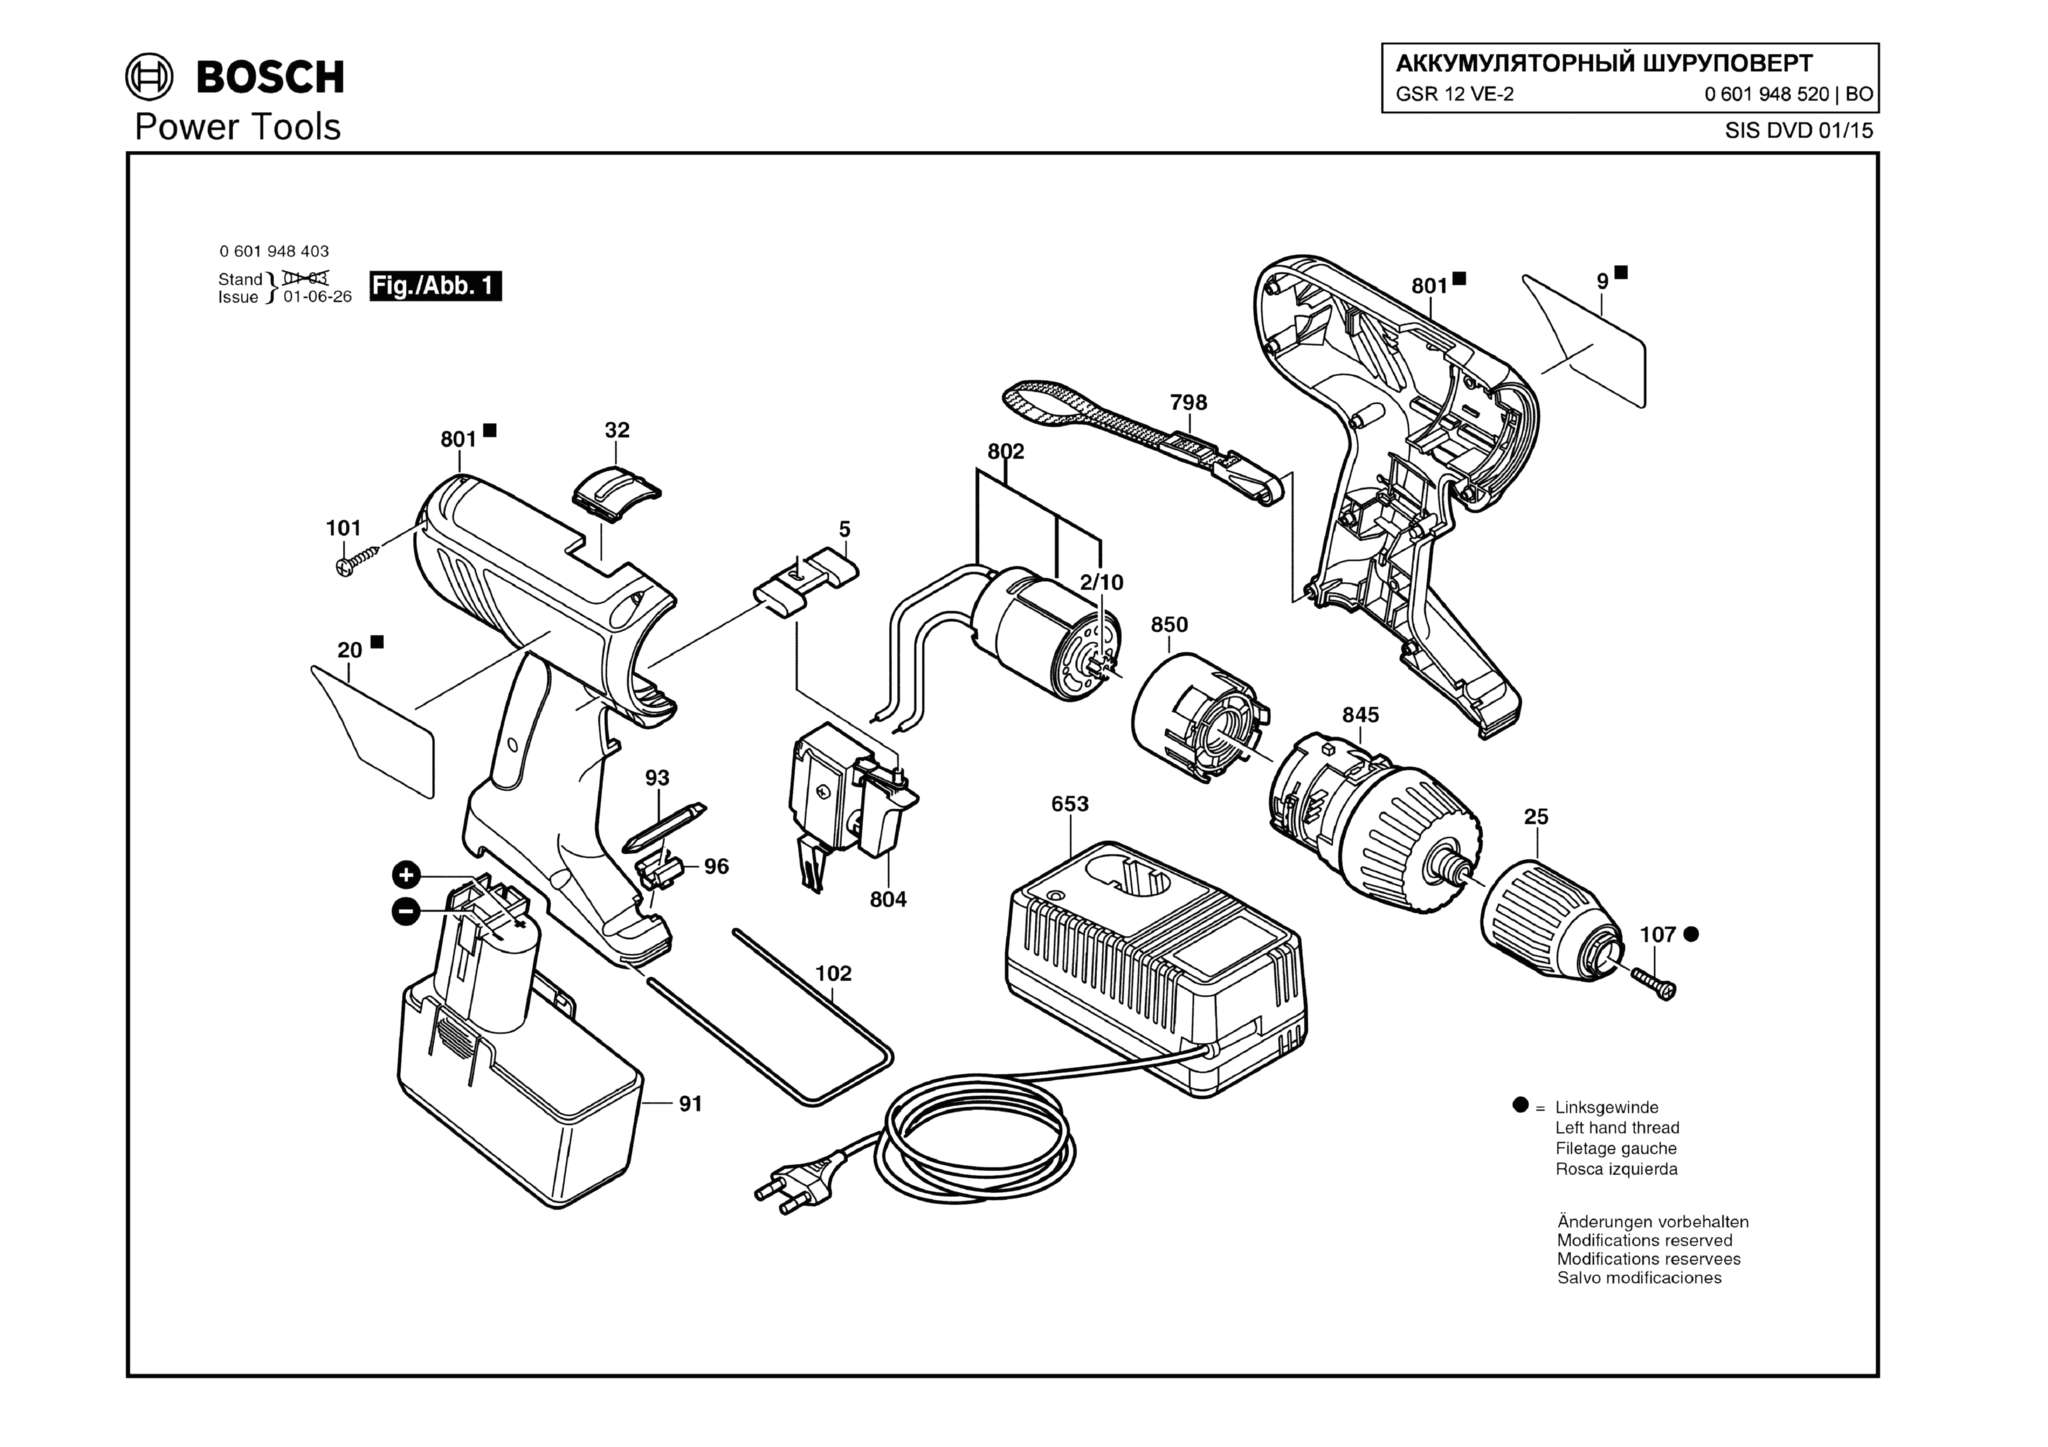 Запчасти, схема и деталировка Bosch GSR 12 VE-2 (ТИП 0601948520)